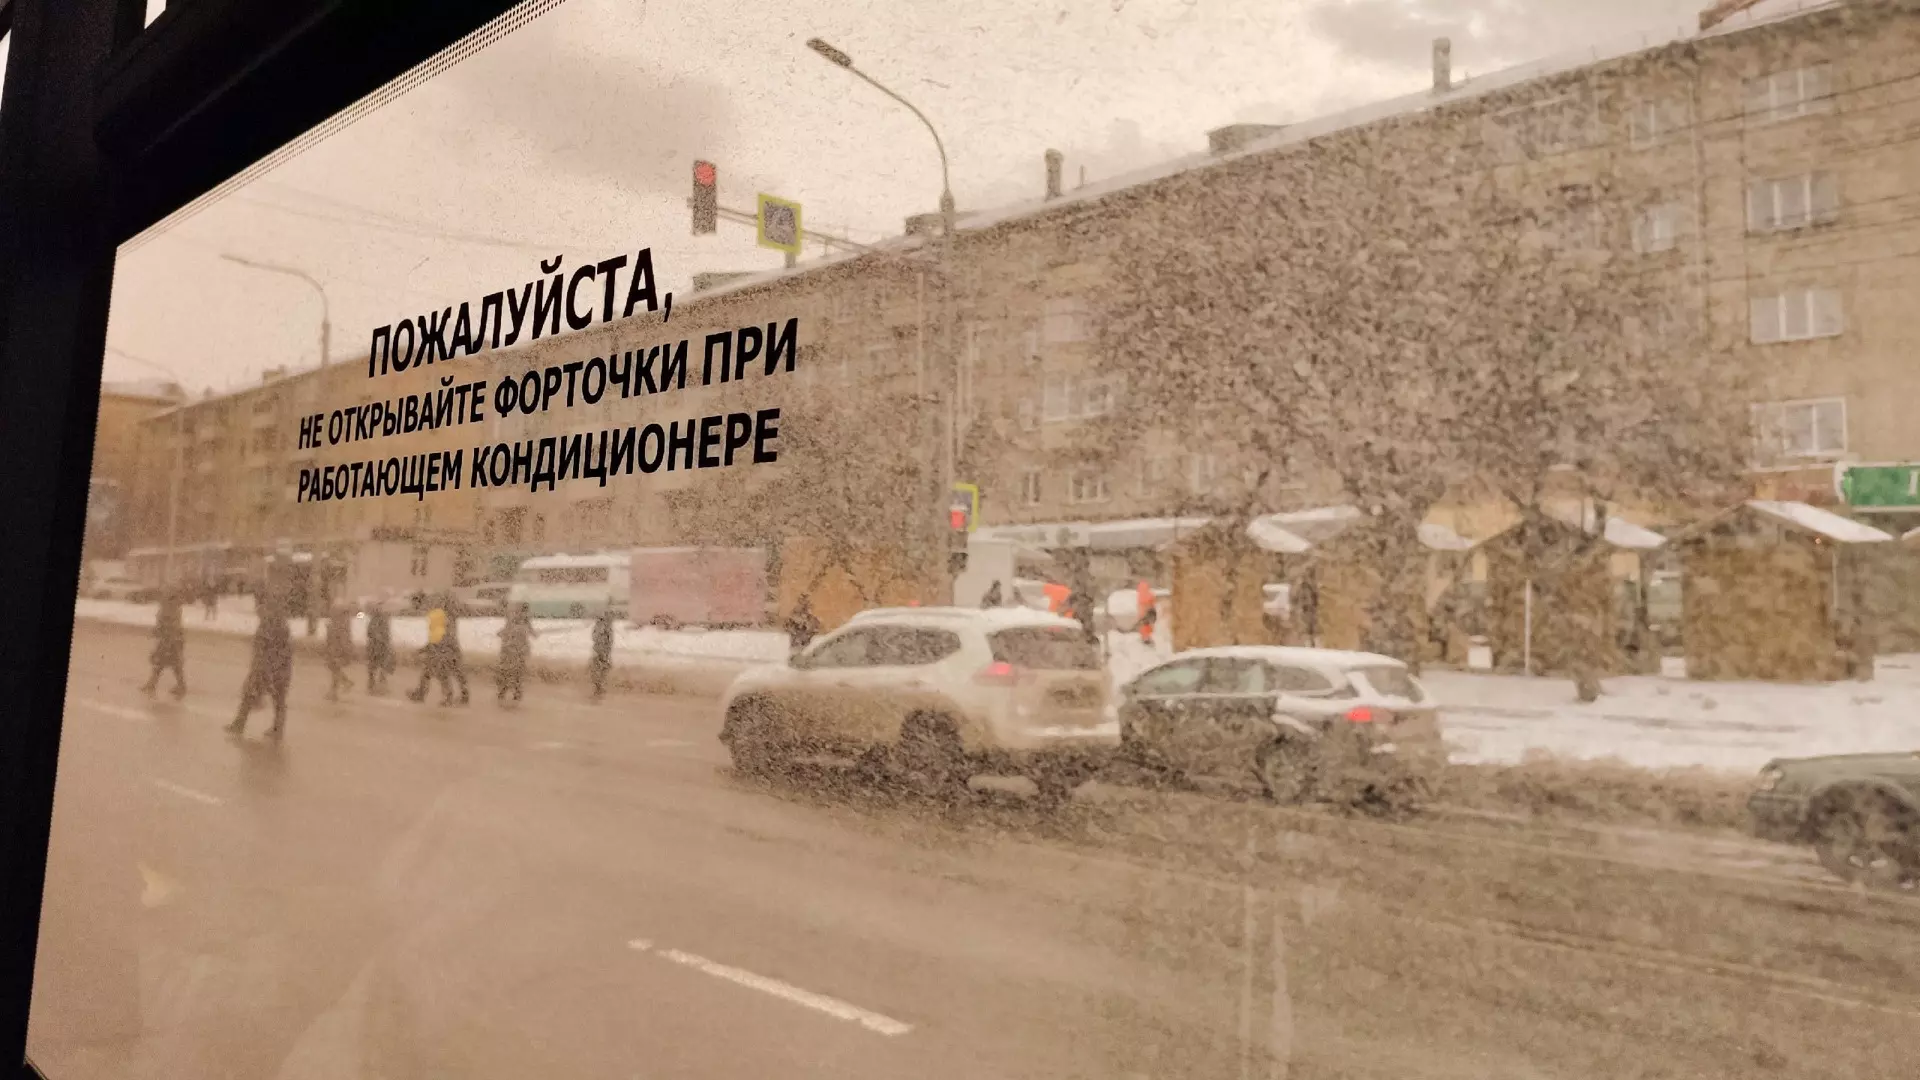 Водитель нового автобуса в Нижневартовске накричал на пассажиров из-за замечания